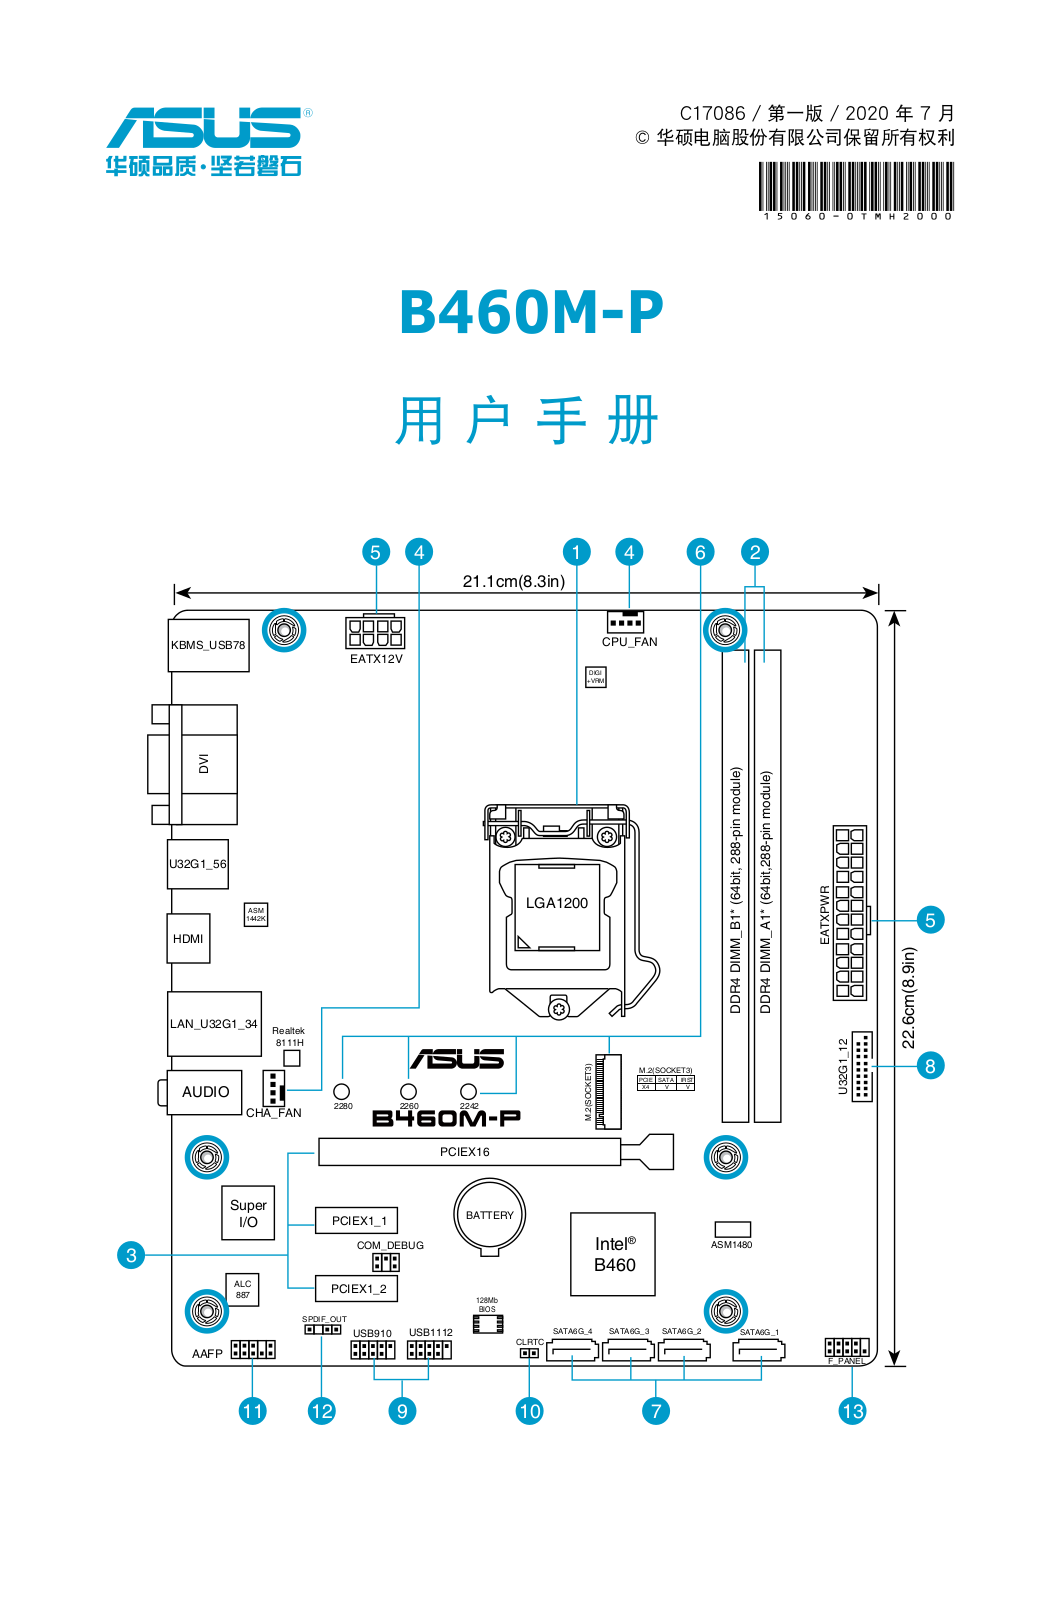 Asus B460M-P User’s Manual